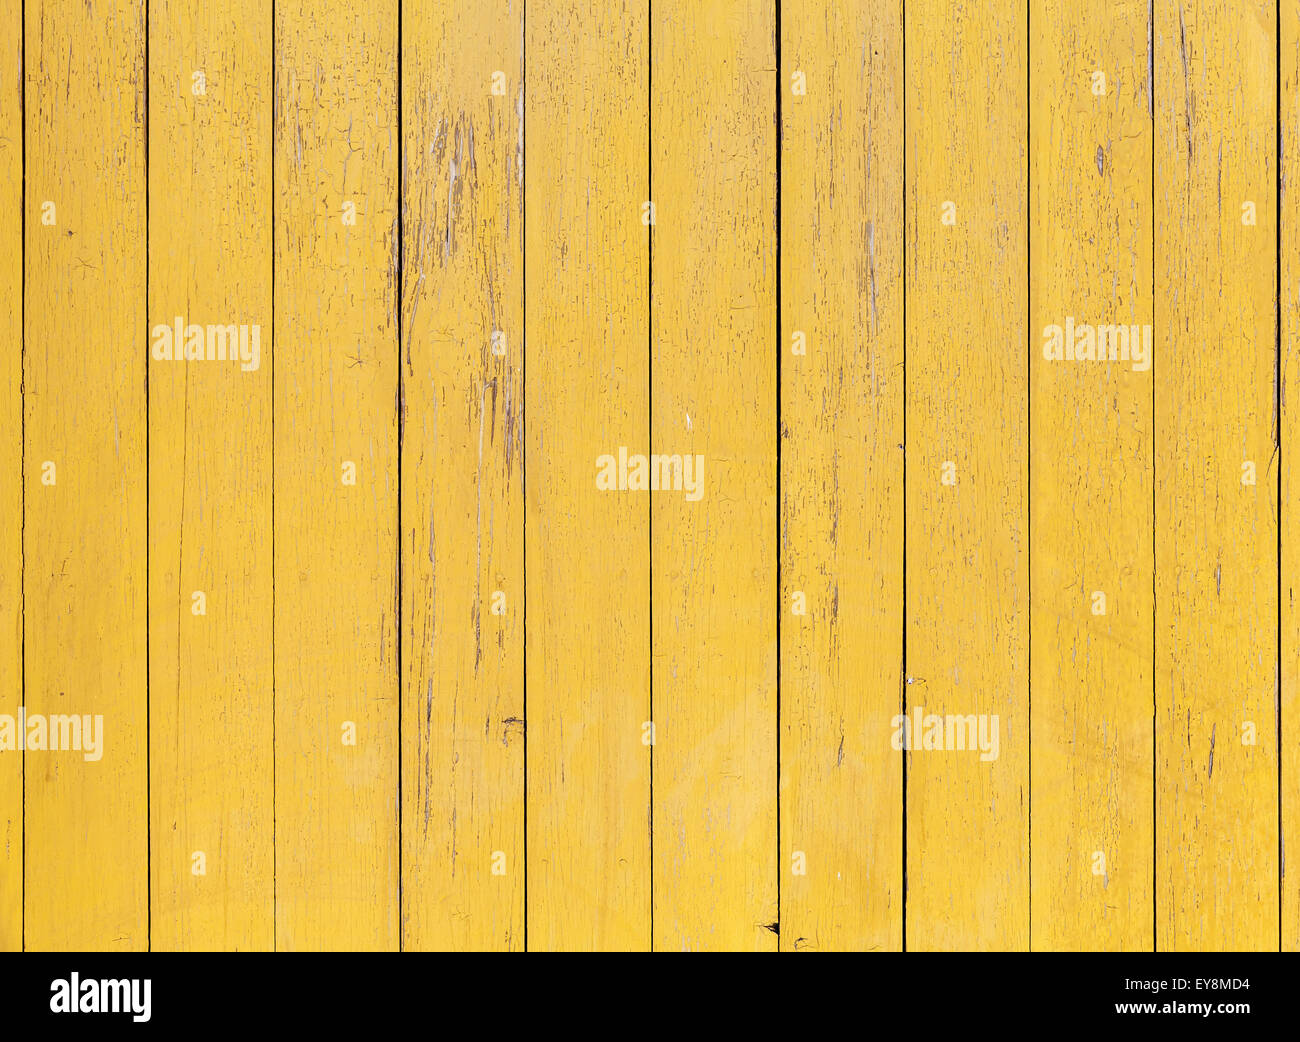 Alte gelbe Holzwand mit gerissenen Lackschicht, detaillierte Hintergrundtextur Foto Stockfoto